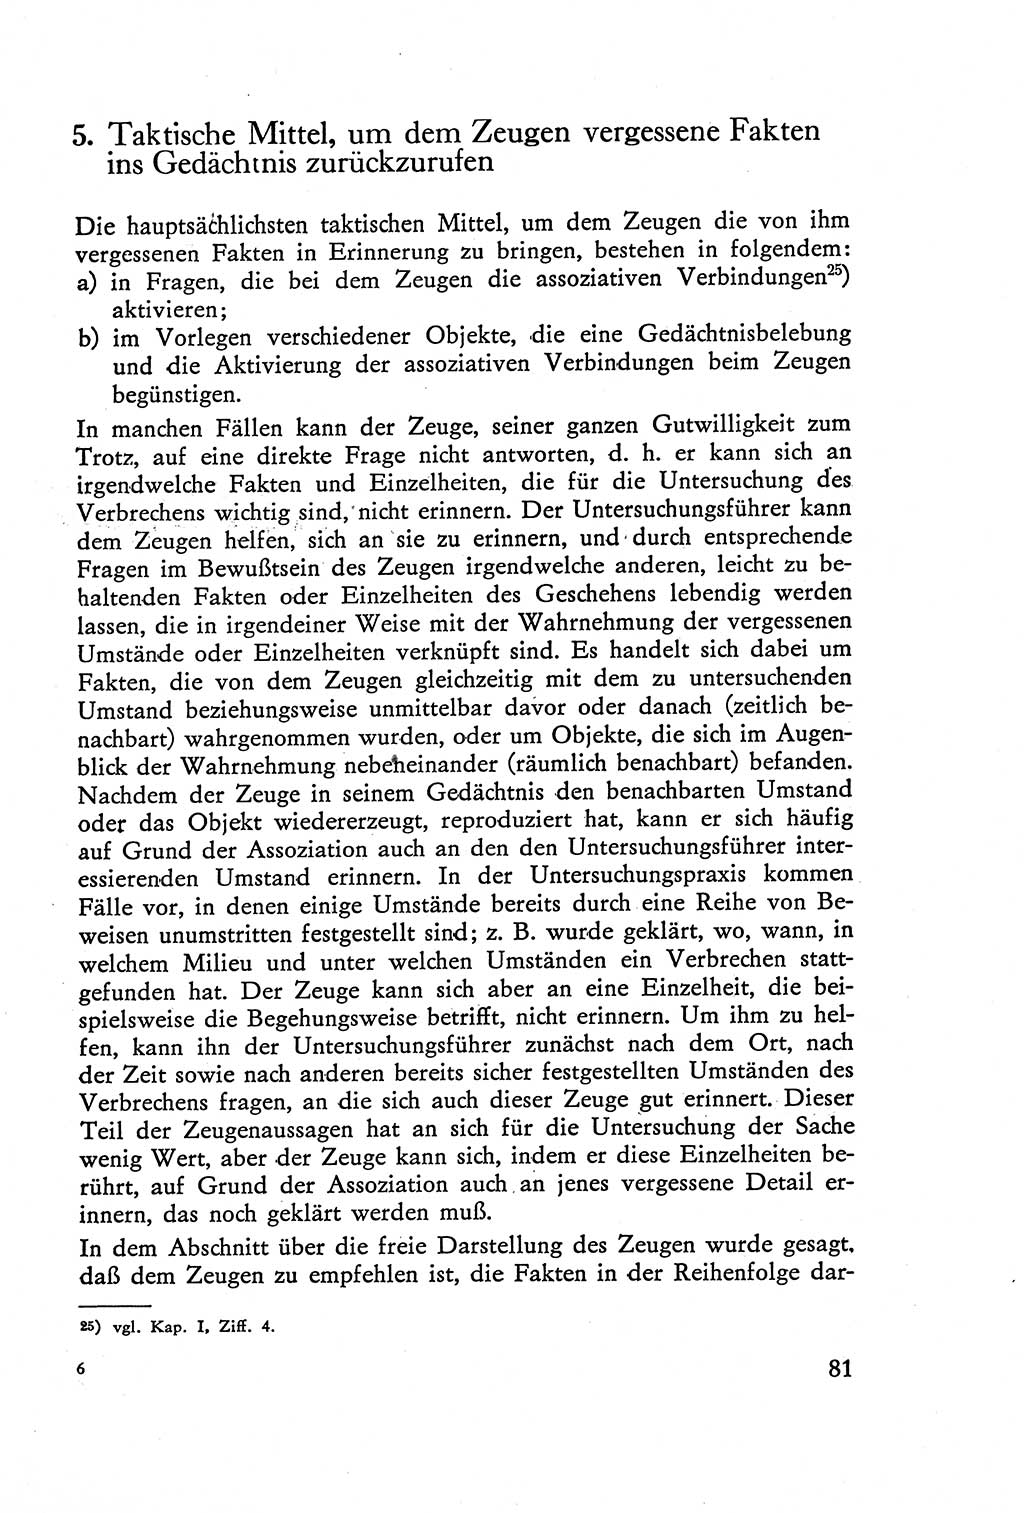 Die Vernehmung [Deutsche Demokratische Republik (DDR)] 1960, Seite 81 (Vern. DDR 1960, S. 81)